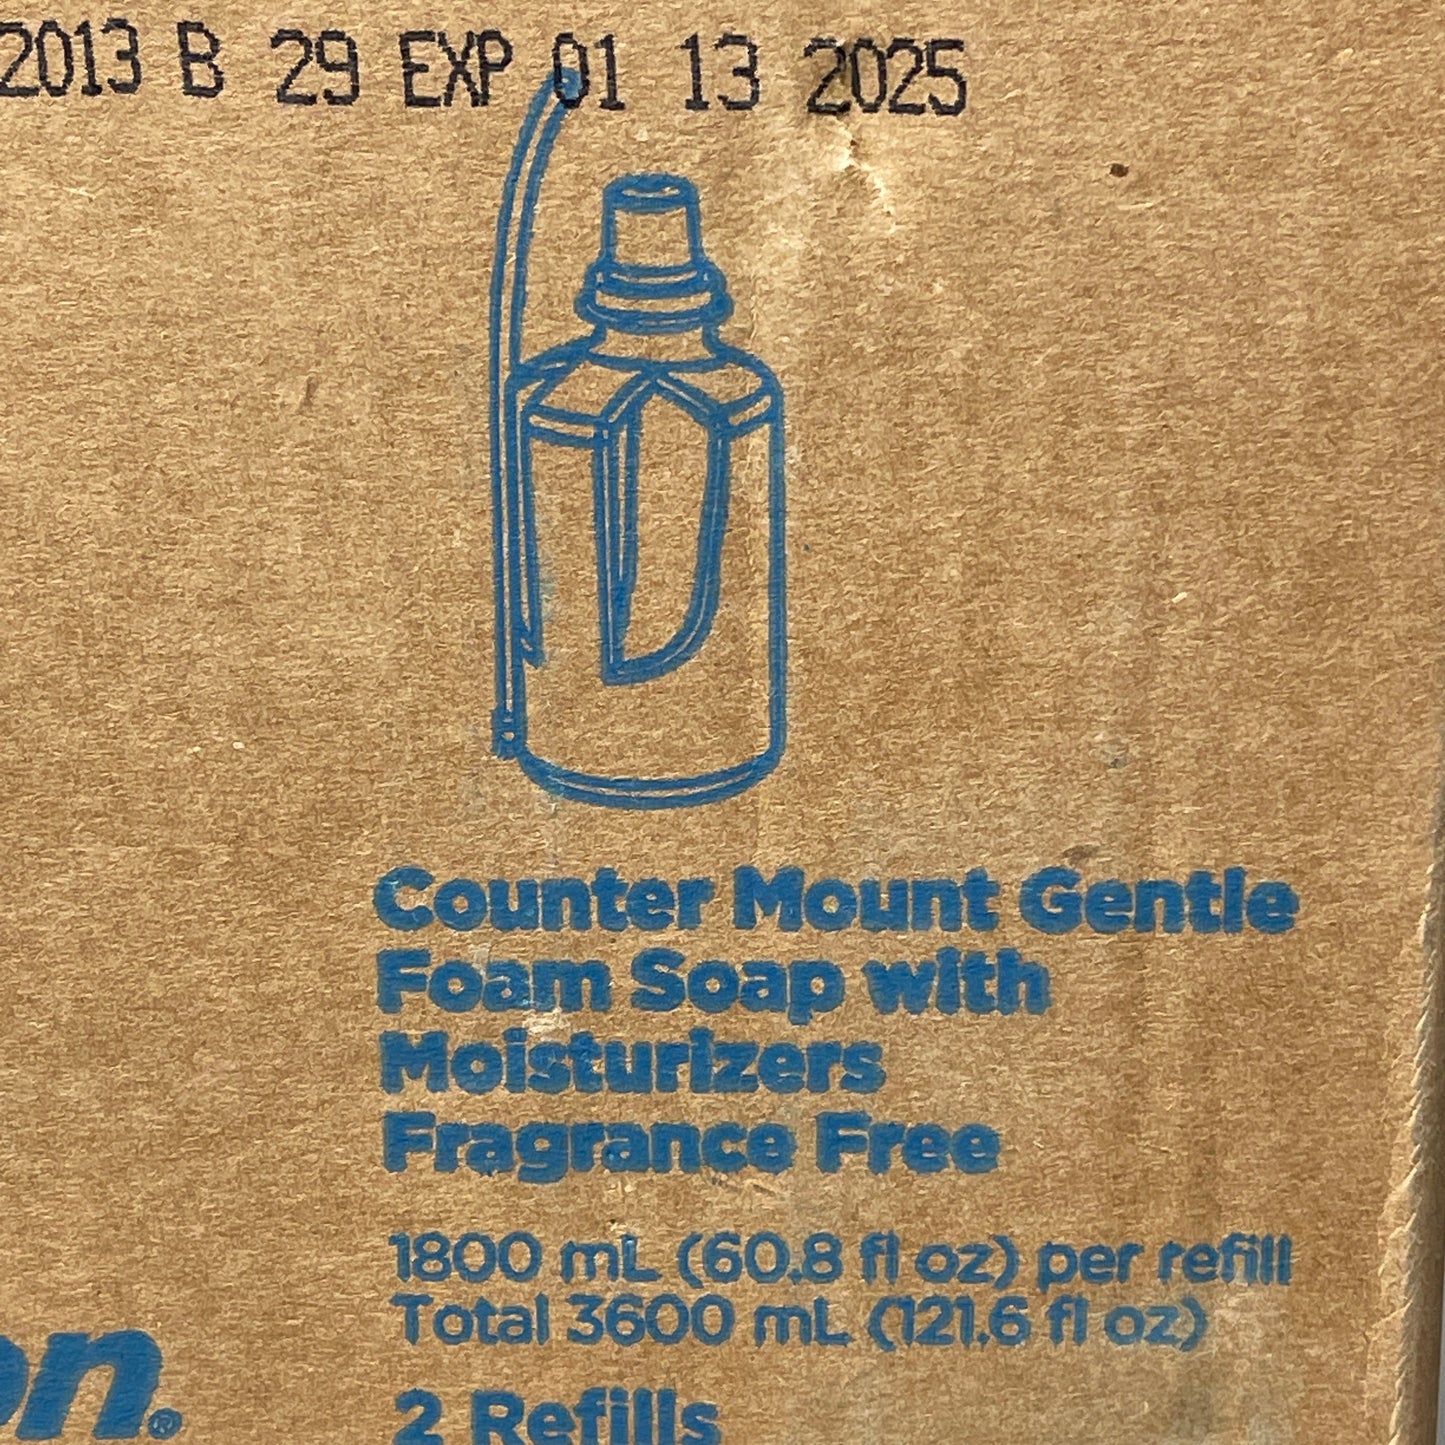 GEORGIA PACIFIC enMotion Counter Mount Gentle Foam Soap w/ Moisturizer 1800 mL 42717 (New)